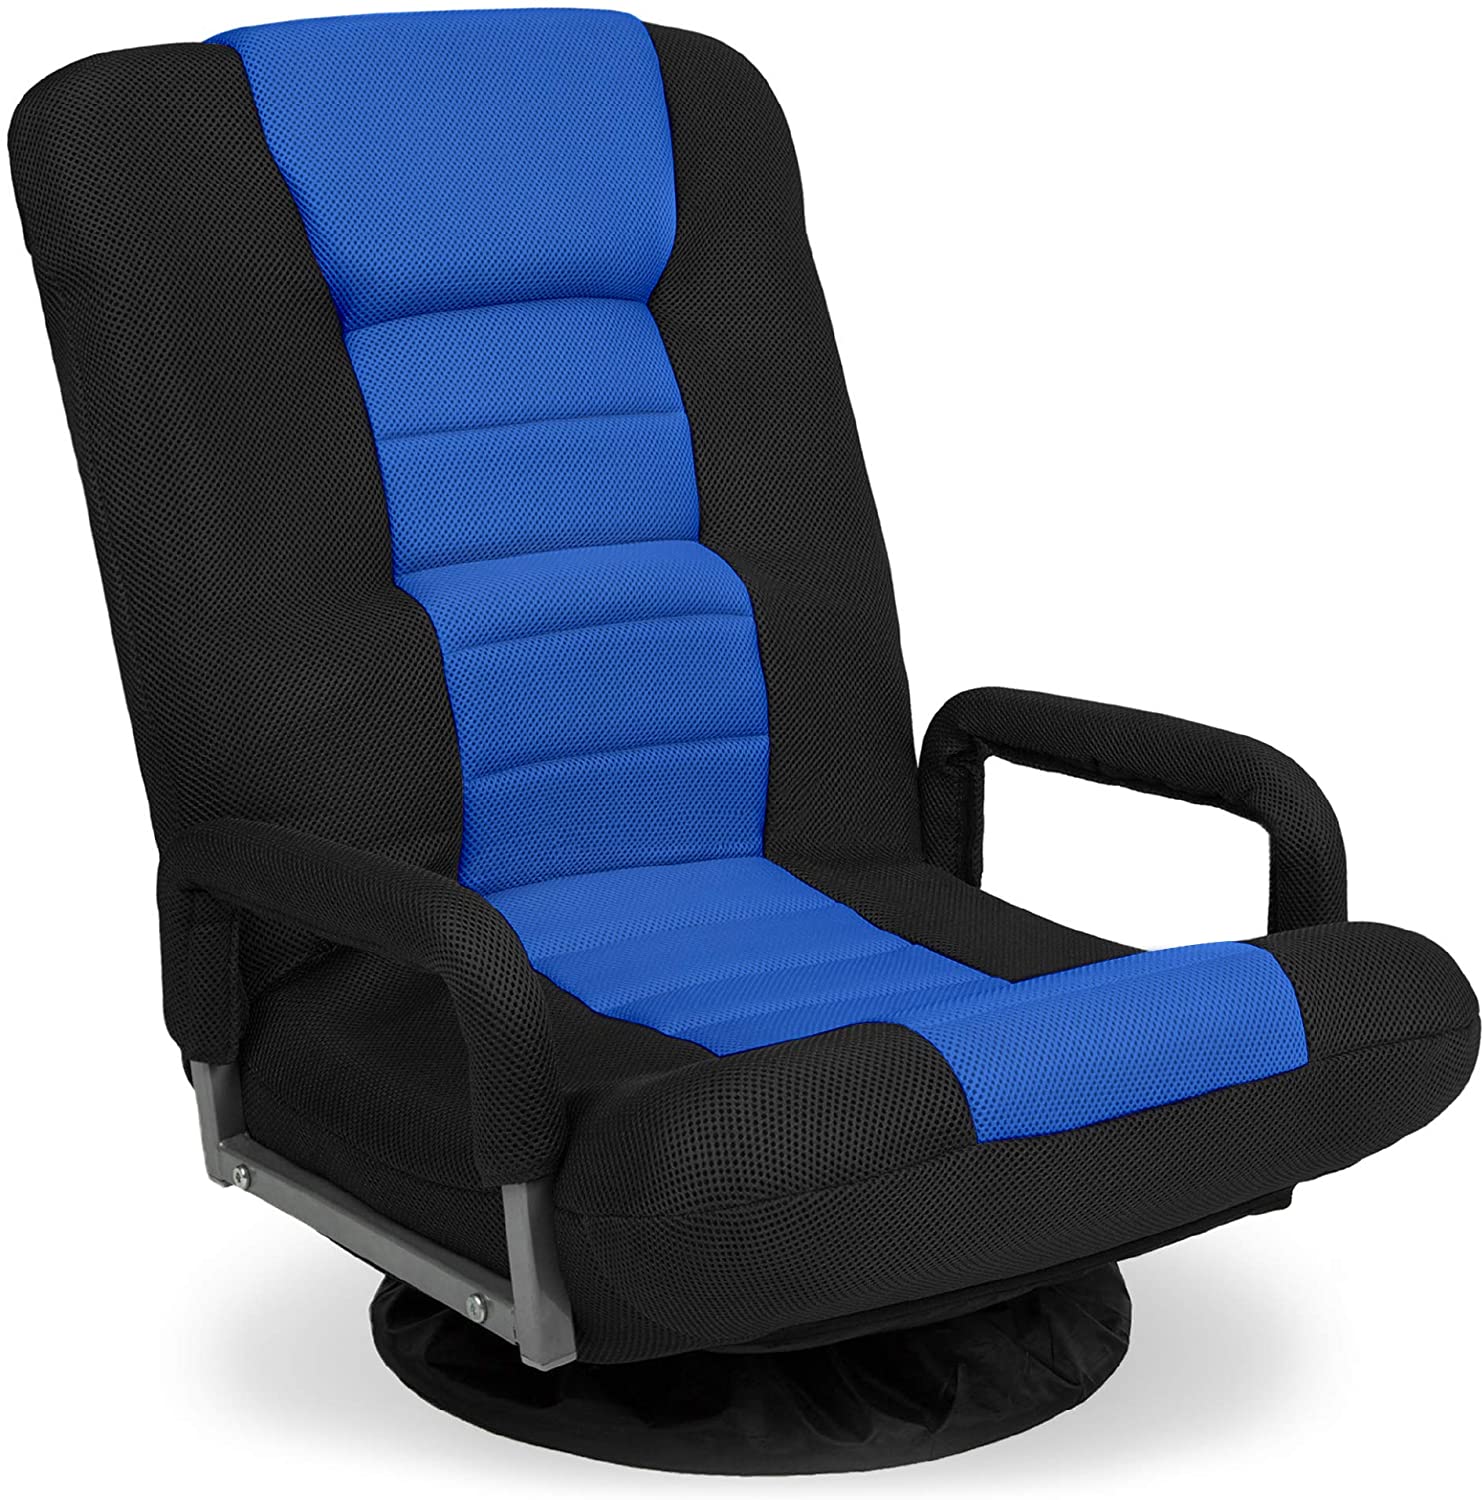 Multipurpose Gaming Chair